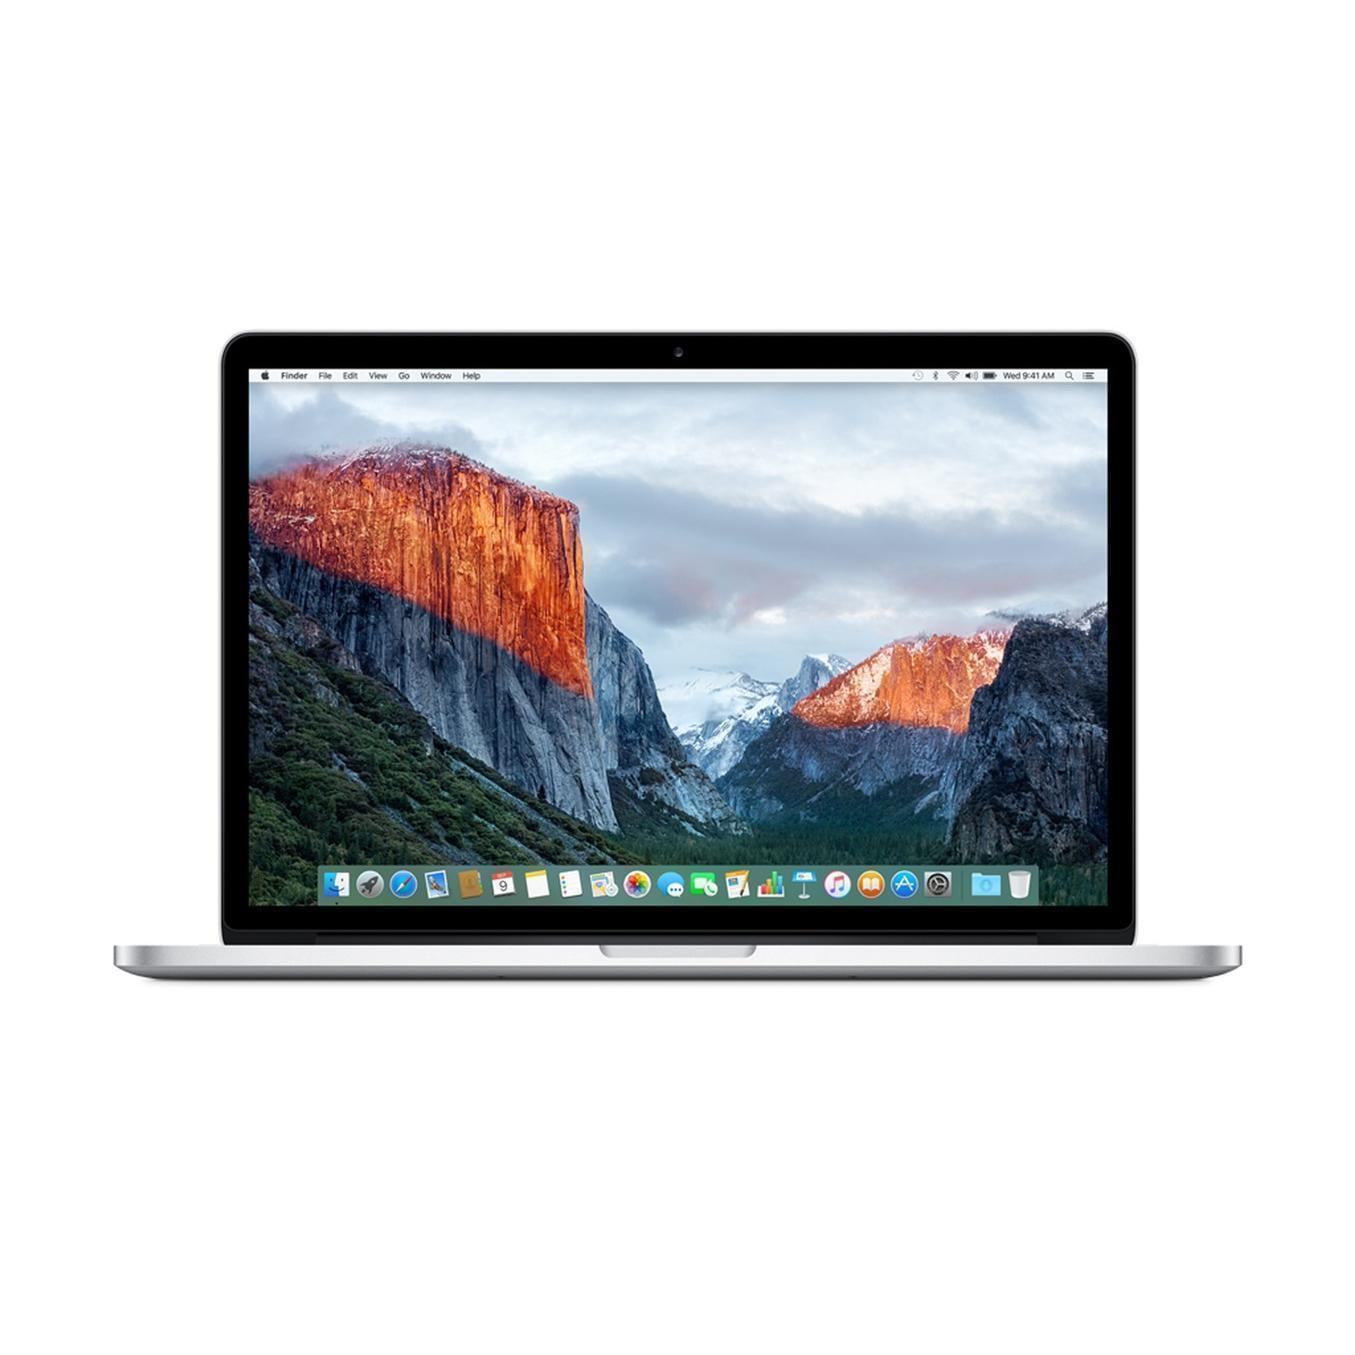 激安新作 15inch Pro MacBook 2017 3.1クワッド i7 ノートPC